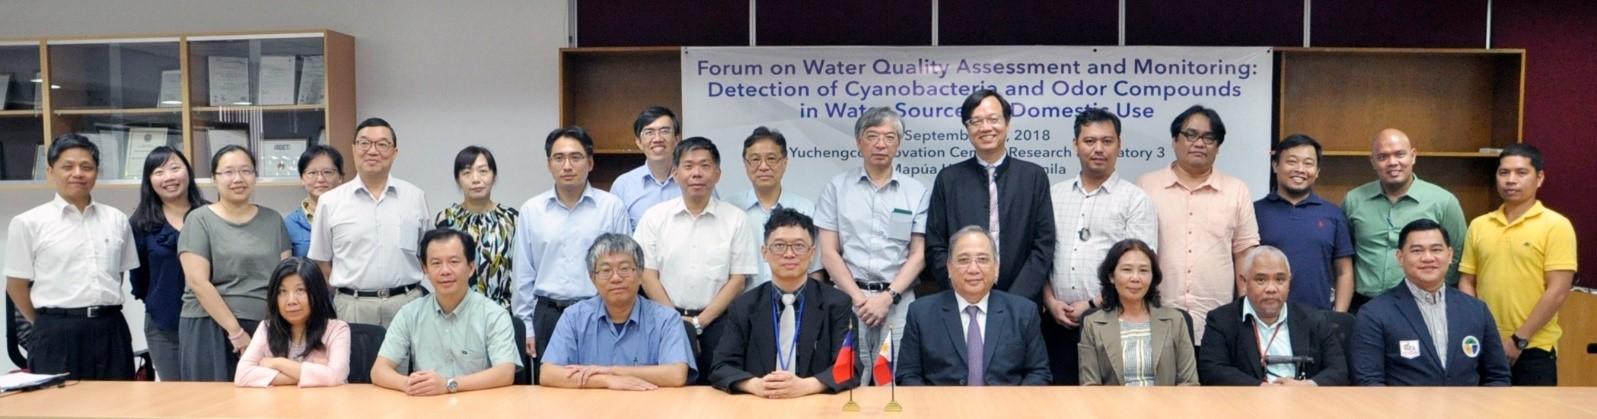 臺菲聯合水質研究中心 水質研討會及設備捐贈典禮